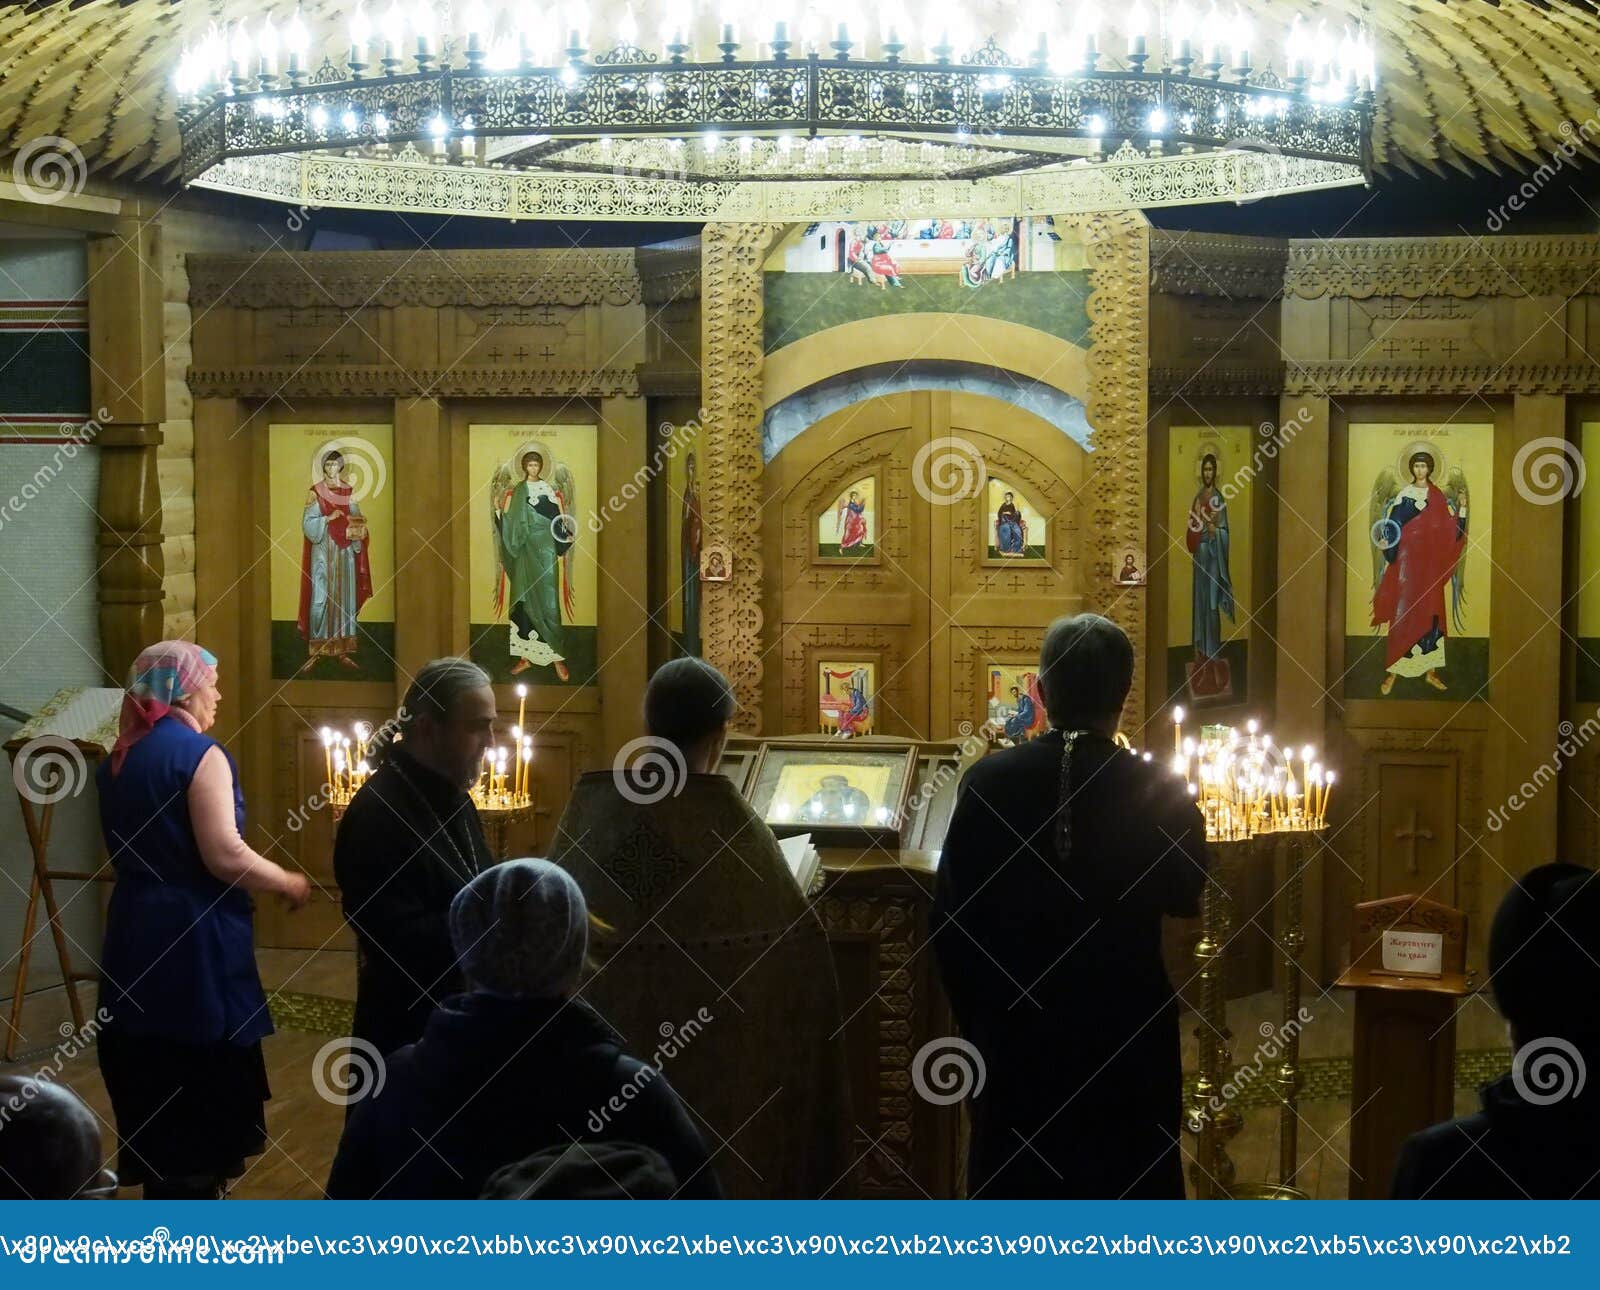 Ukraińscy Ortodoksalni chrześcijanie świętują boże narodzenia. Księża wynosili Bożenarodzeniową jawną modlitwę